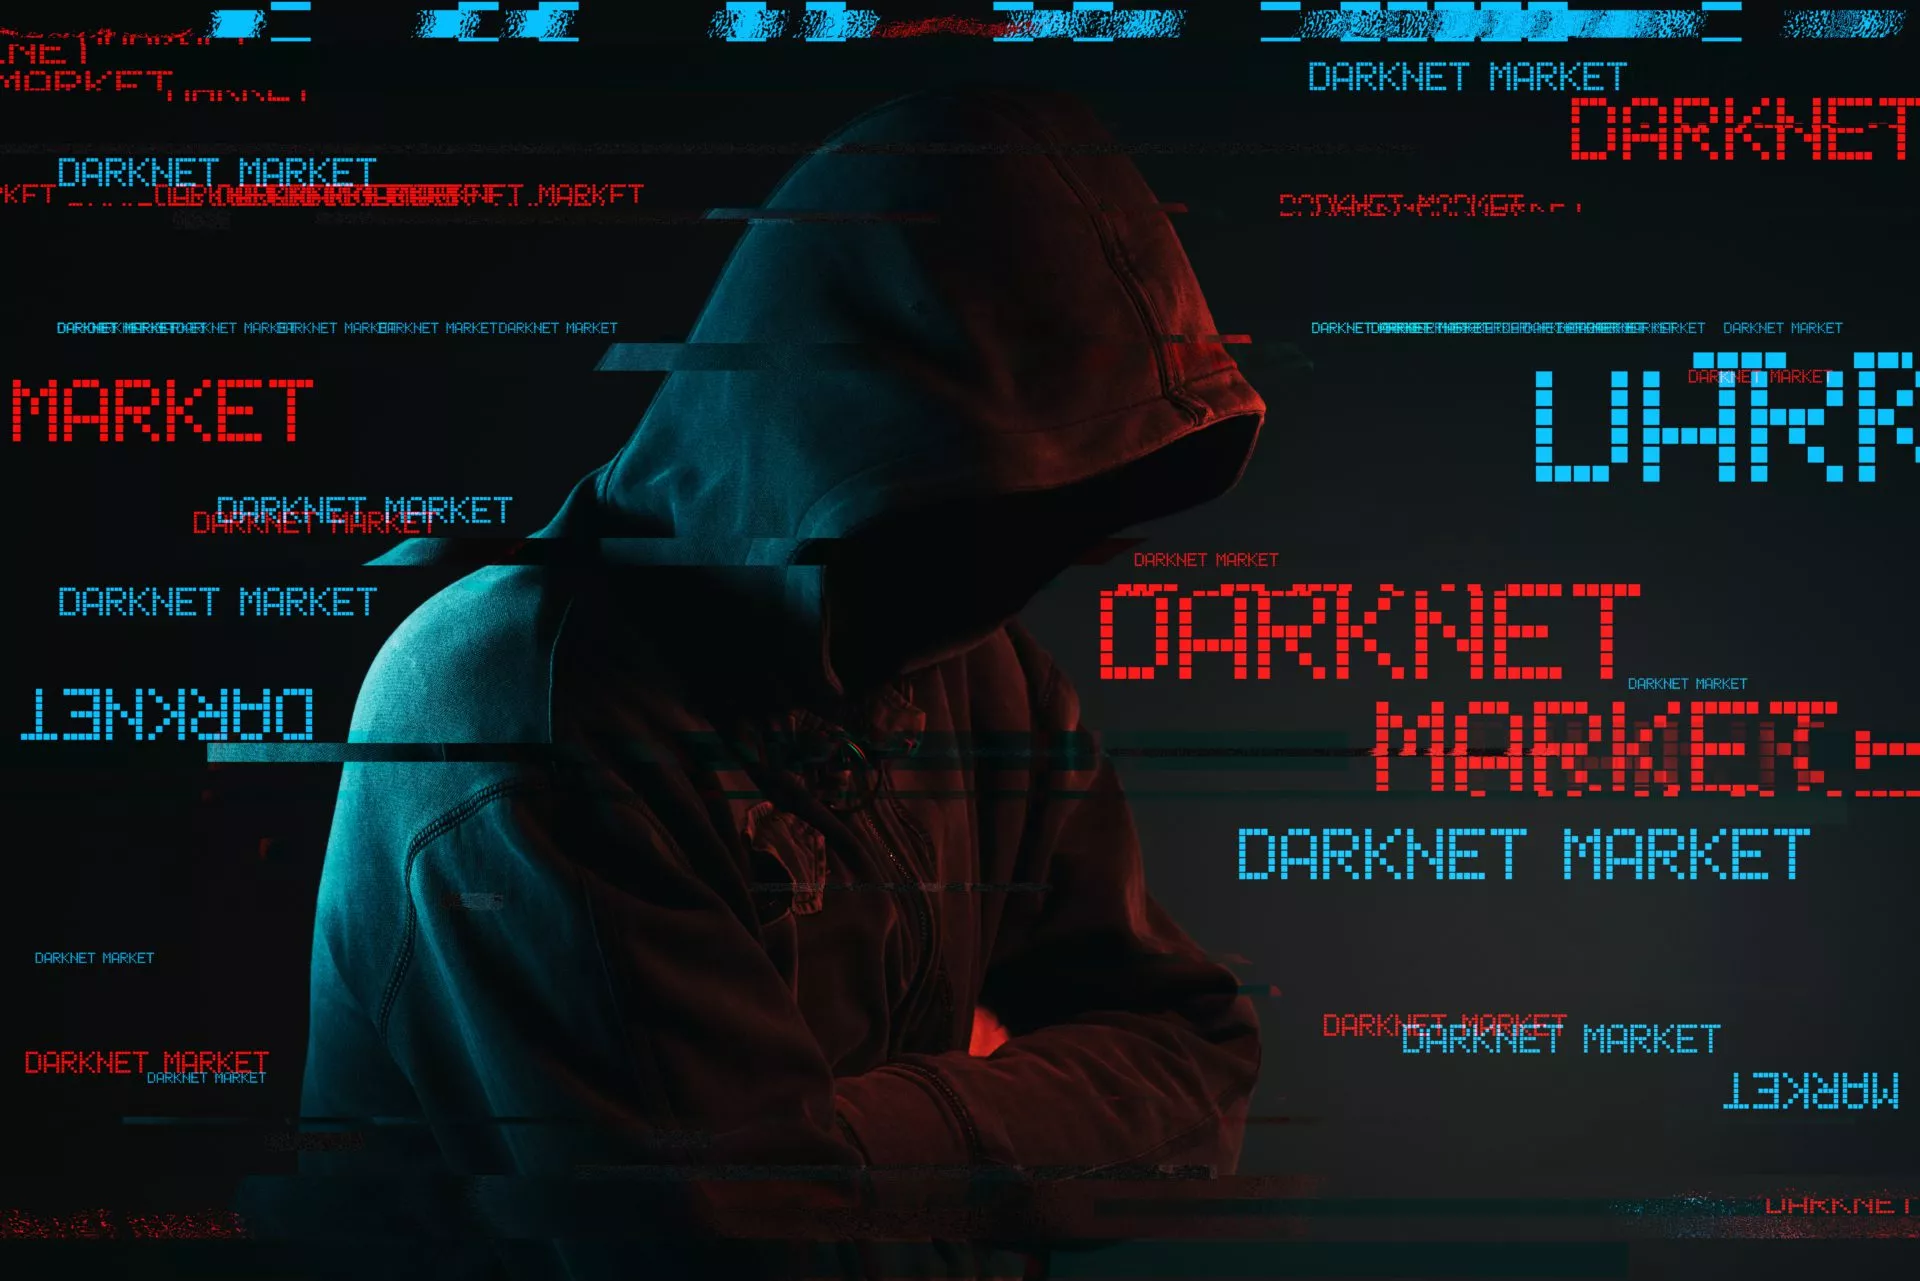 Op 5-na-grootste cryptodienst Oost-Europa blijkt darknet-markt